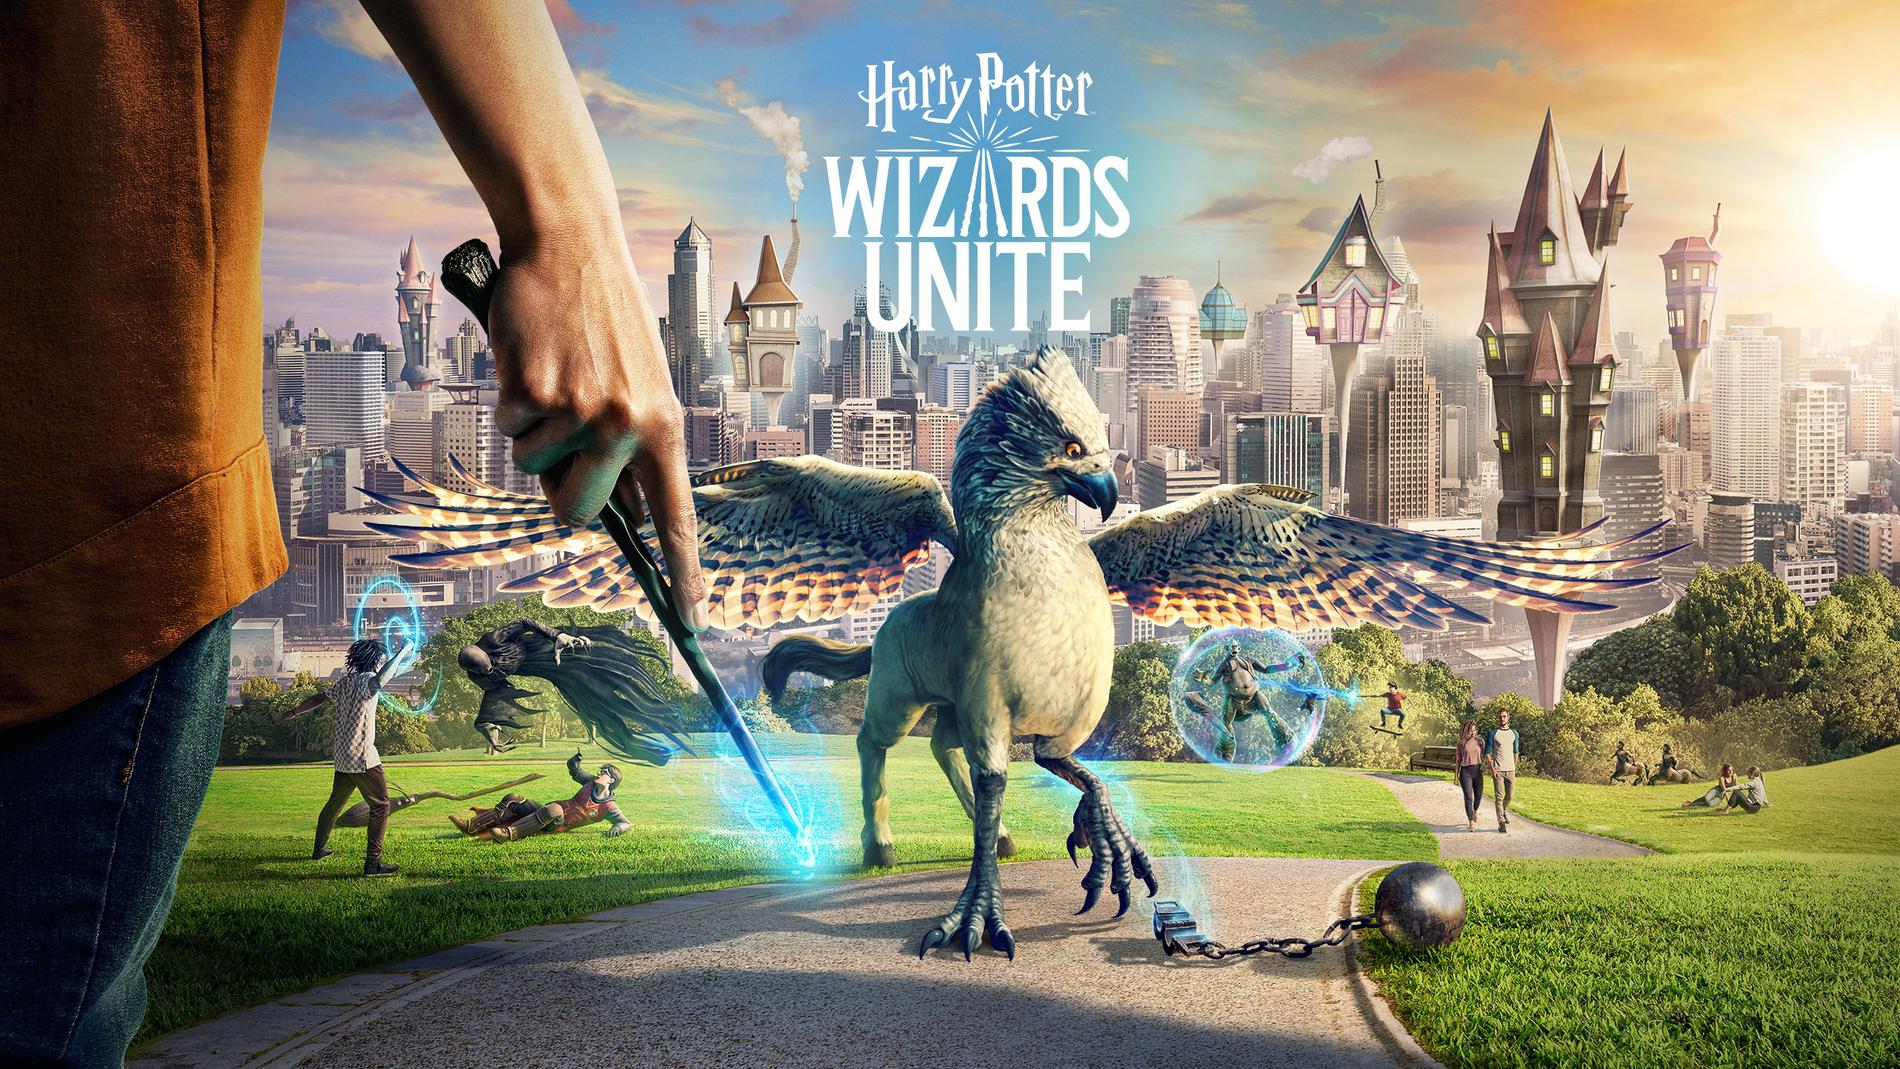 Harry Potter-spelet "Harry Potter: Wizards unite" läggs ner. Pressbild.